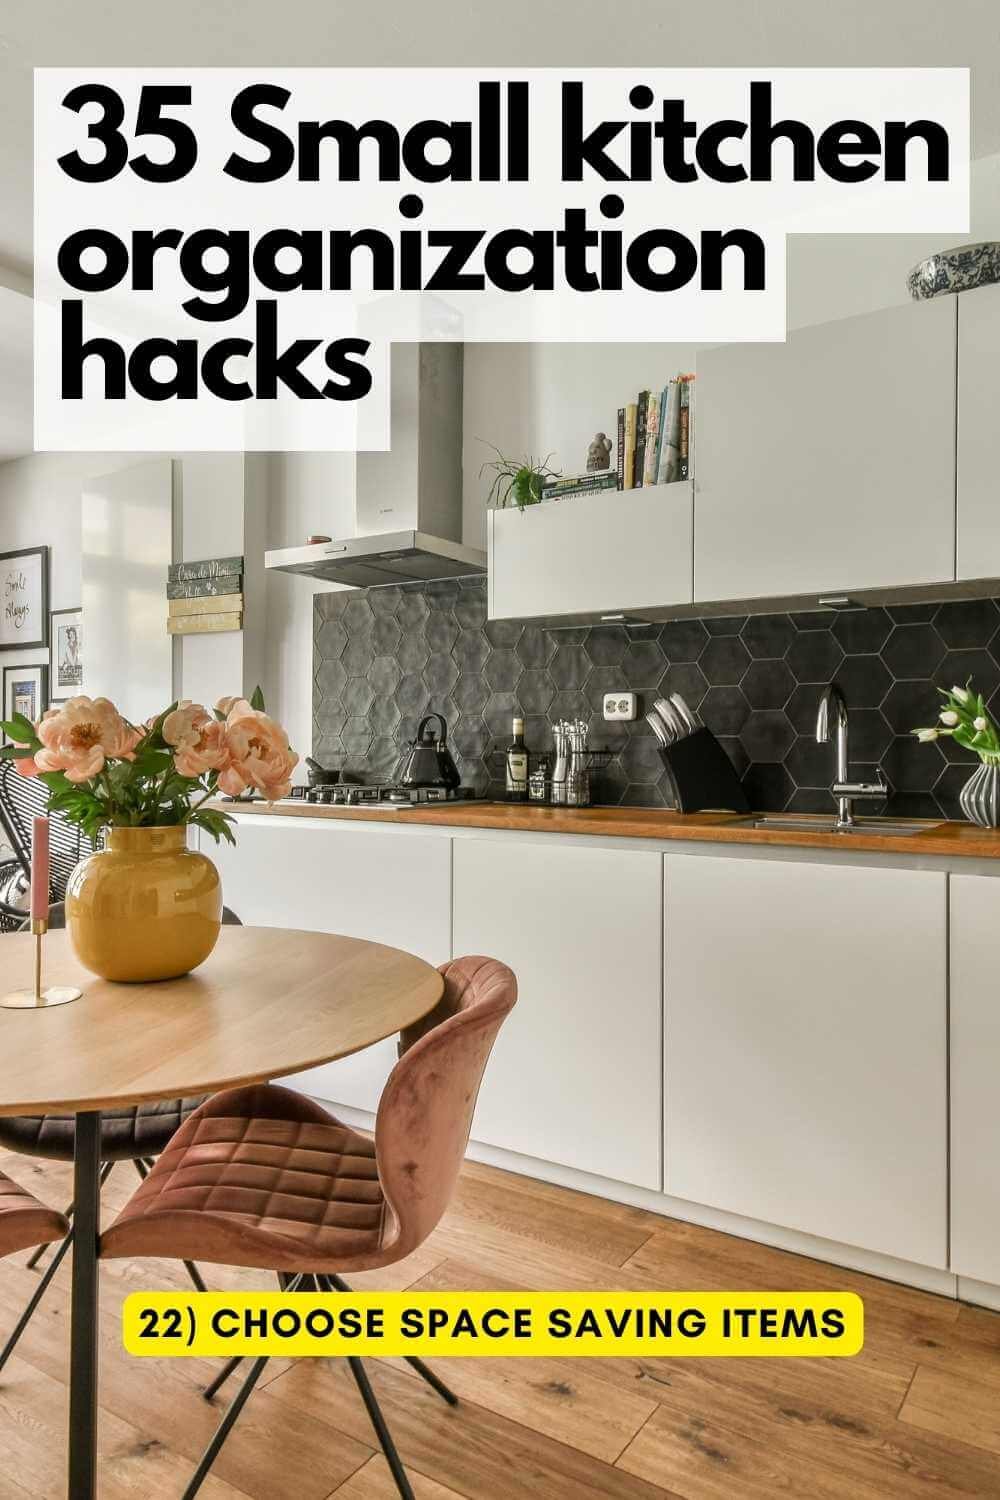 Kitchen organization ideas - kitchen space saving hacks